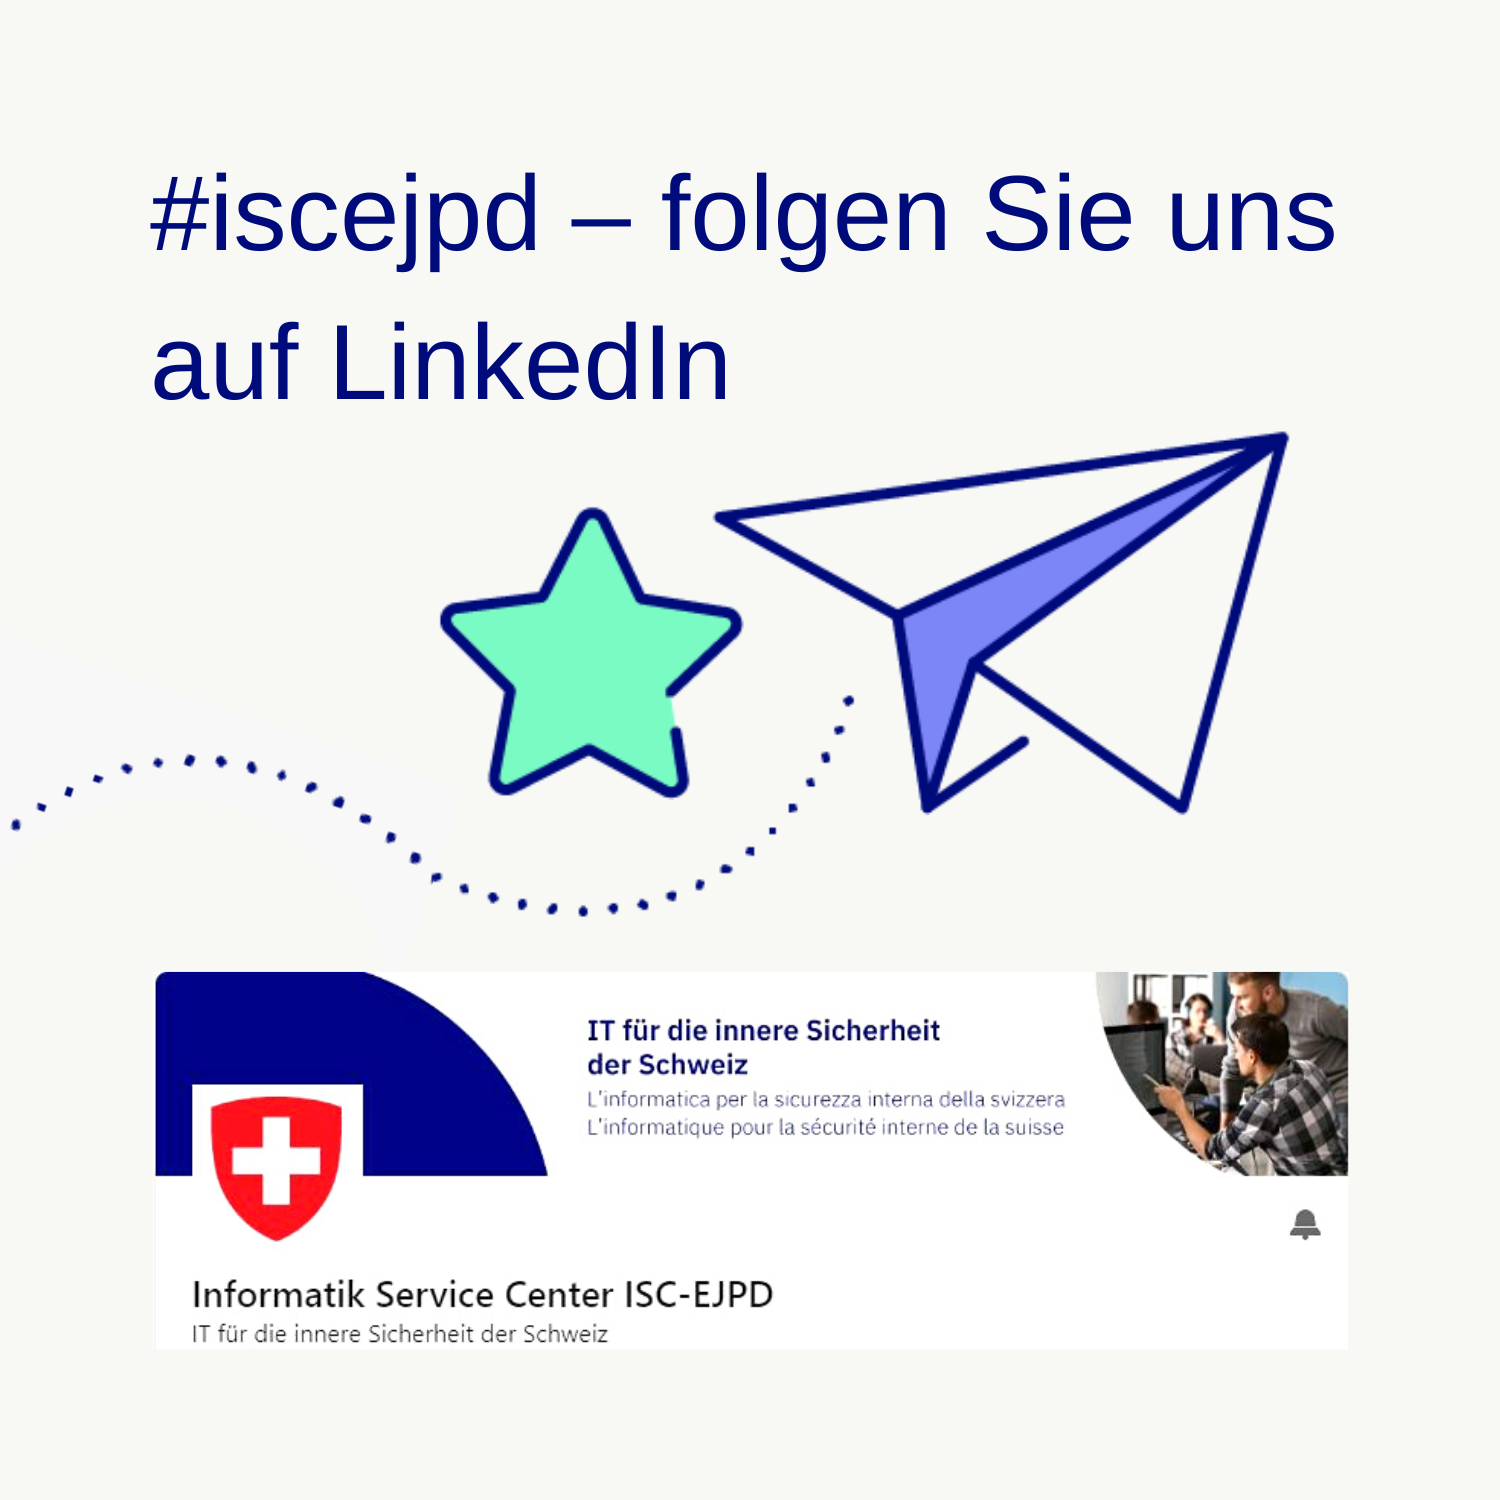 Symbolisches Bild des LinkedIn-Kanal des ISC-EJPD und Hinweis diesem Kanal zu folgen